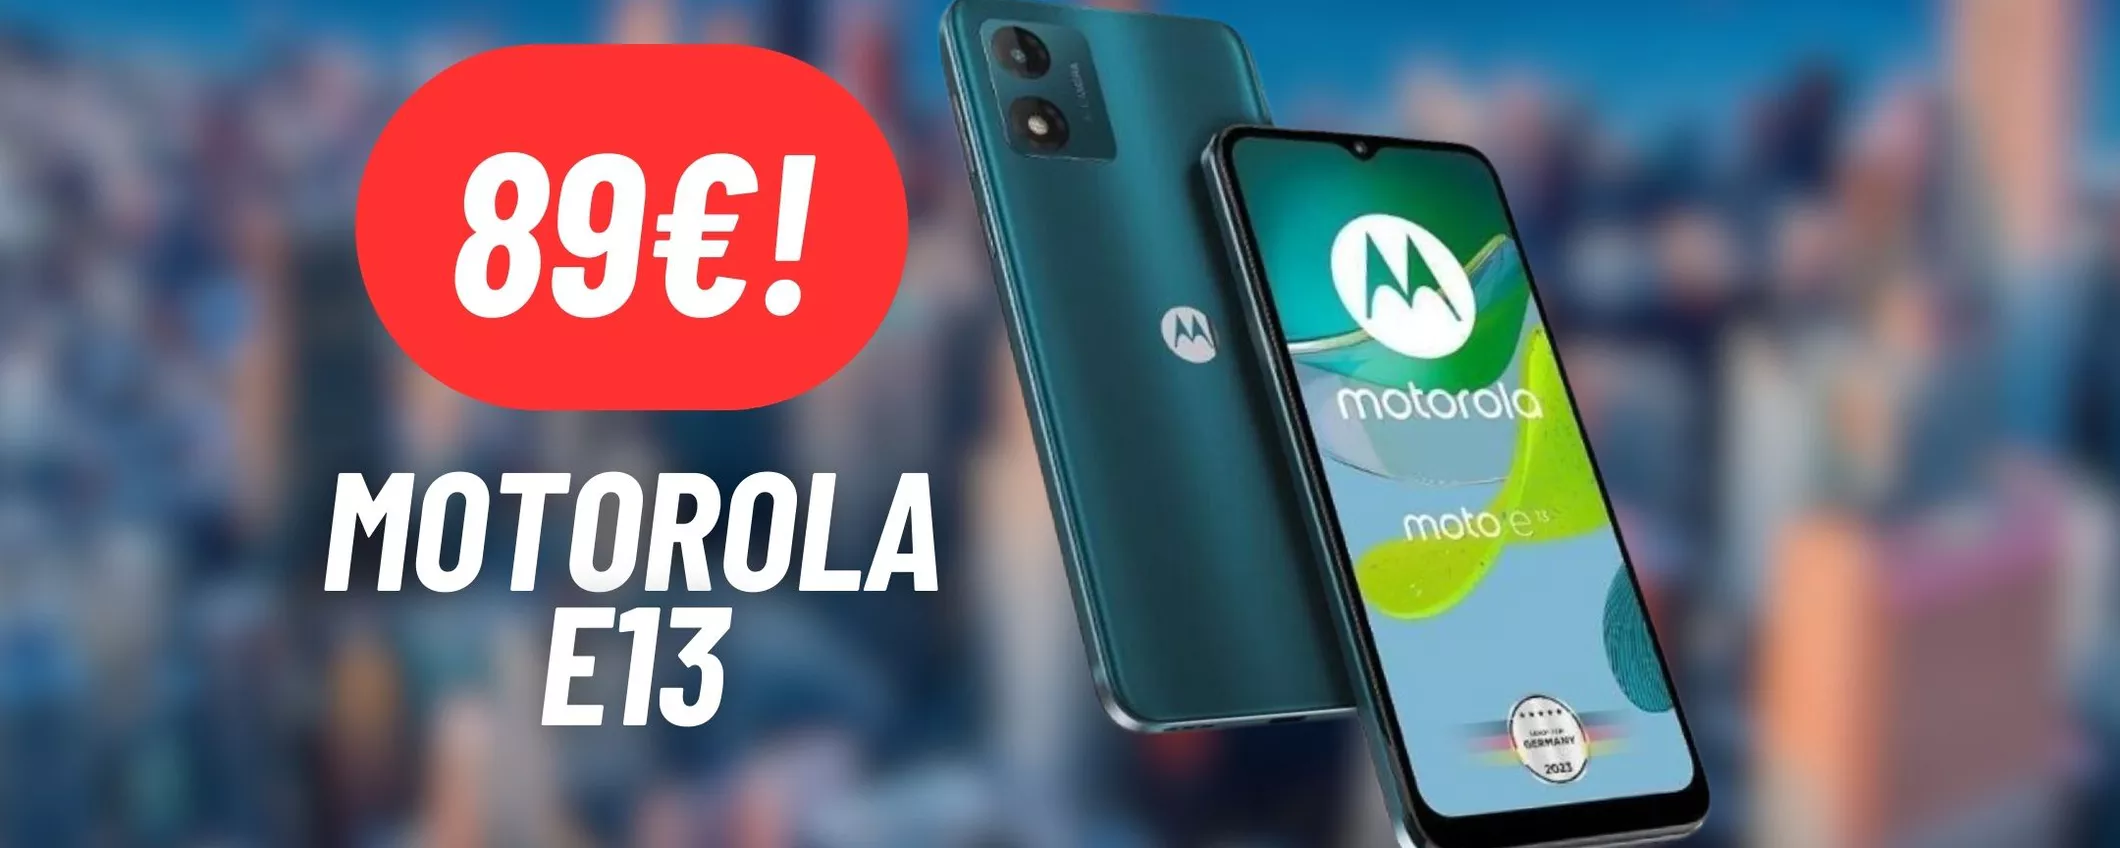 DISINTEGRATO il prezzo del Motorola E13: costa solo 89€